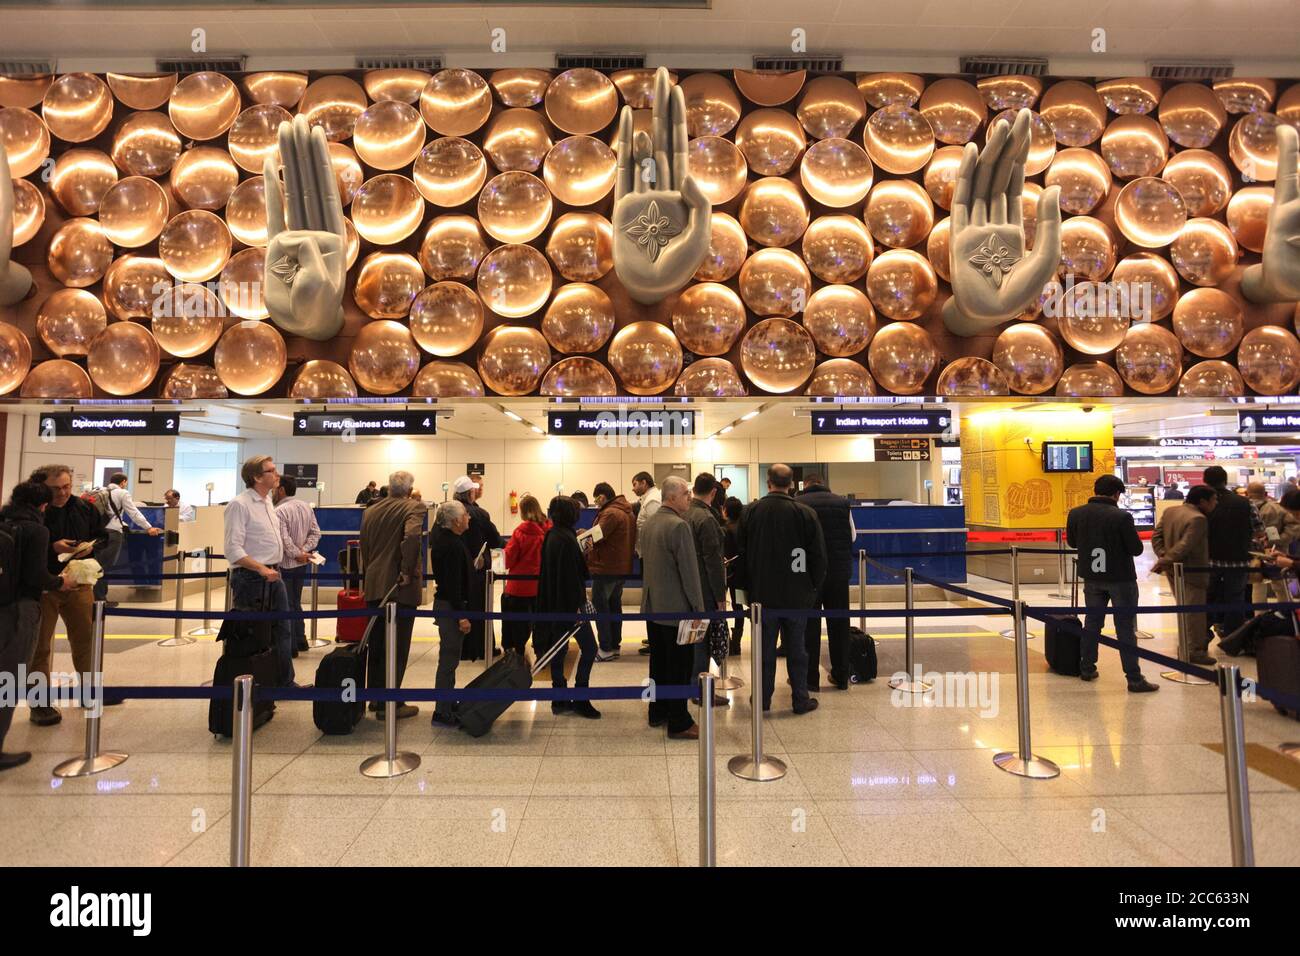 NEW DELHI, INDIEN - 12. FEBRUAR 2014: Einwanderungsgebiet am internationalen Flughafen Indira Gandhi in Neu Delhi, Indien Stockfoto